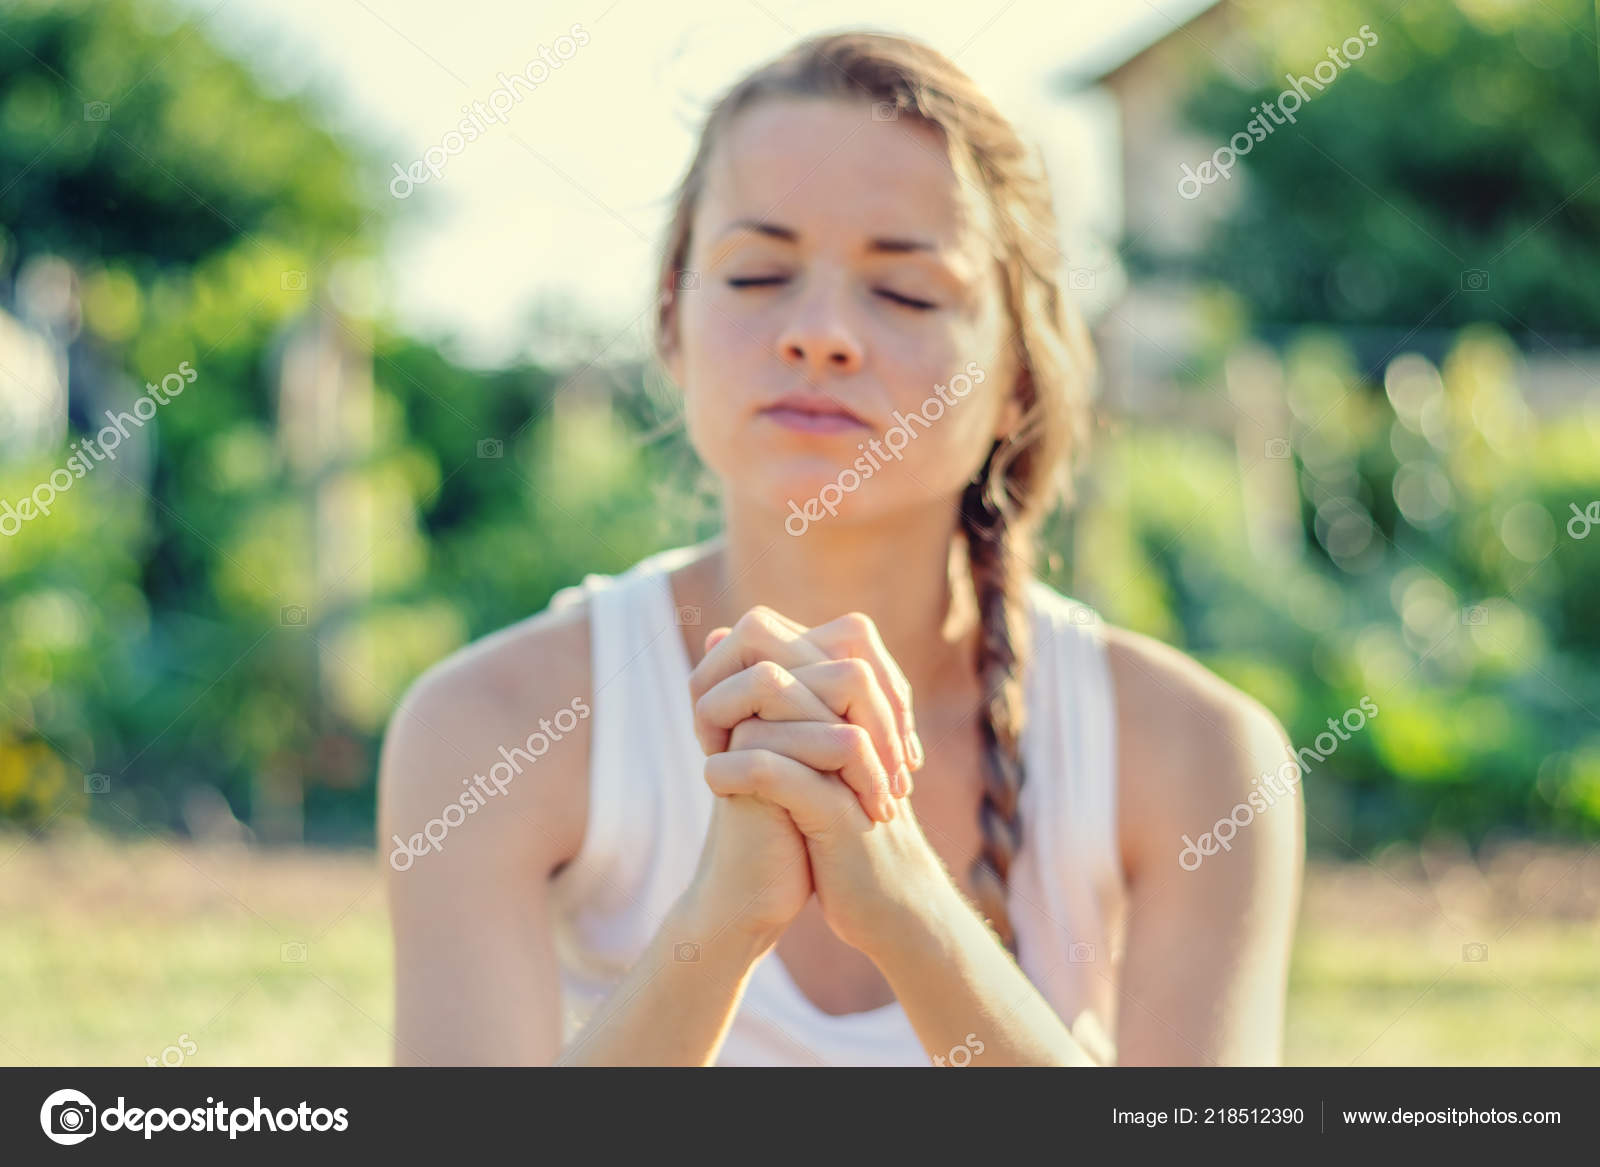 Christian Worship Praise Young Woman Praying Early Morning - 